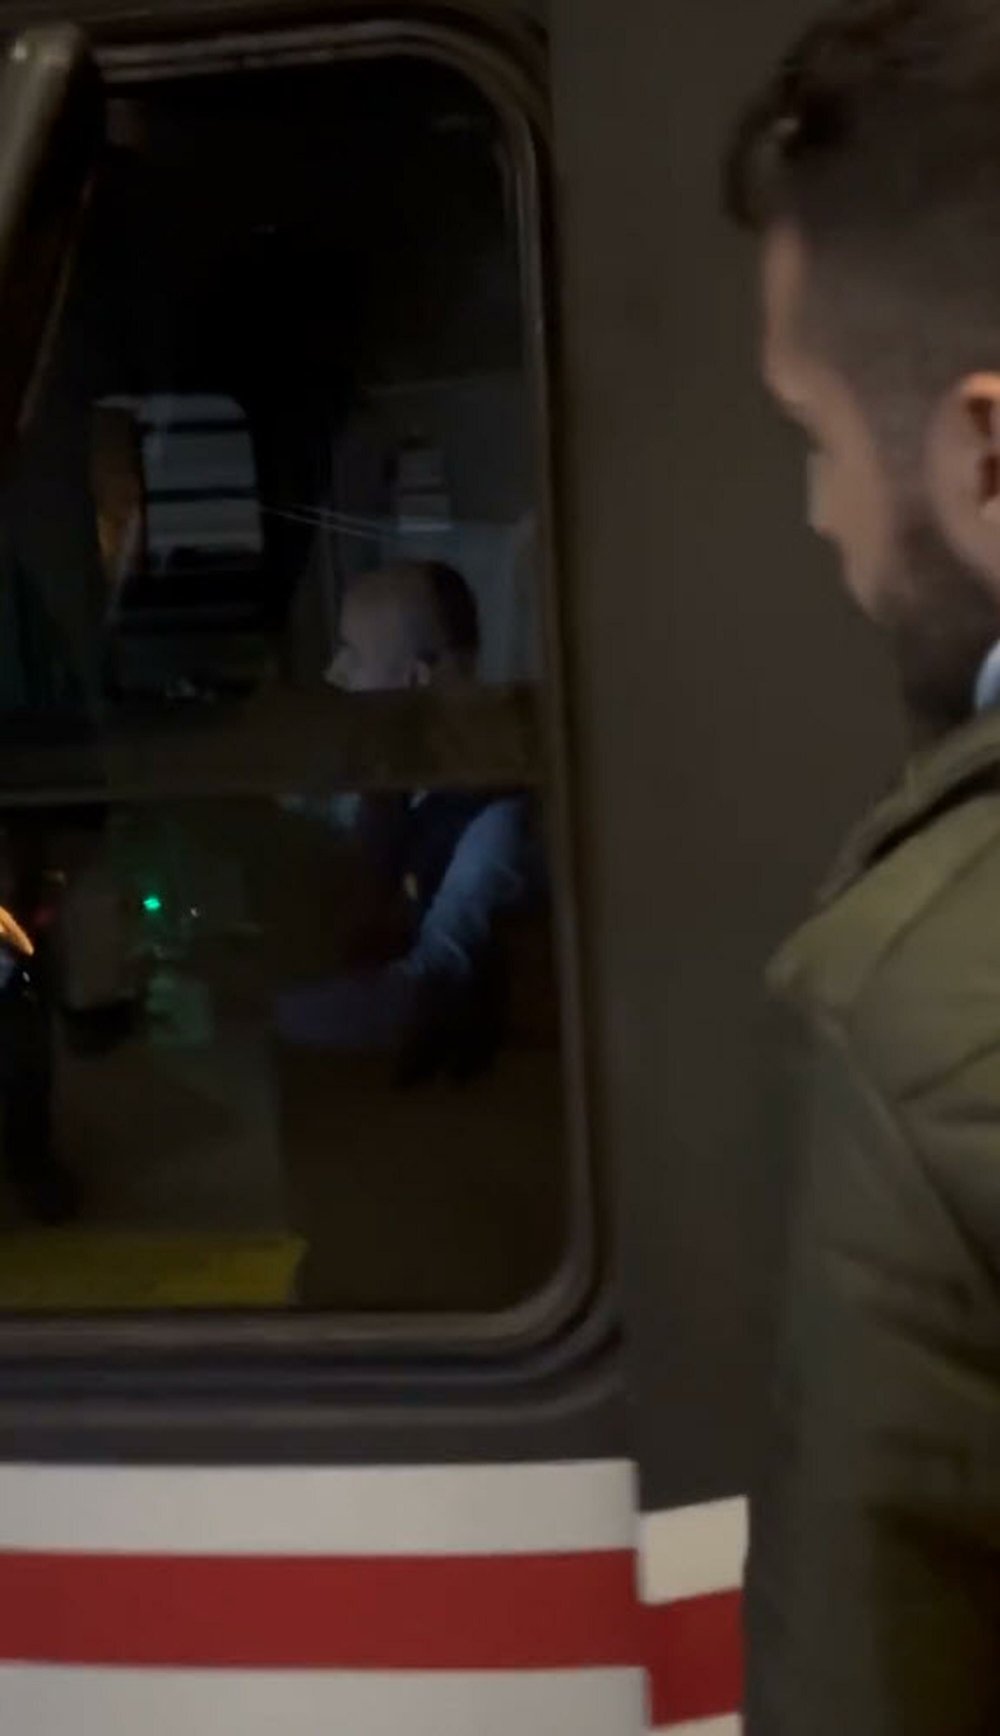 Metroda vatman kabinine tekmeli saldırı